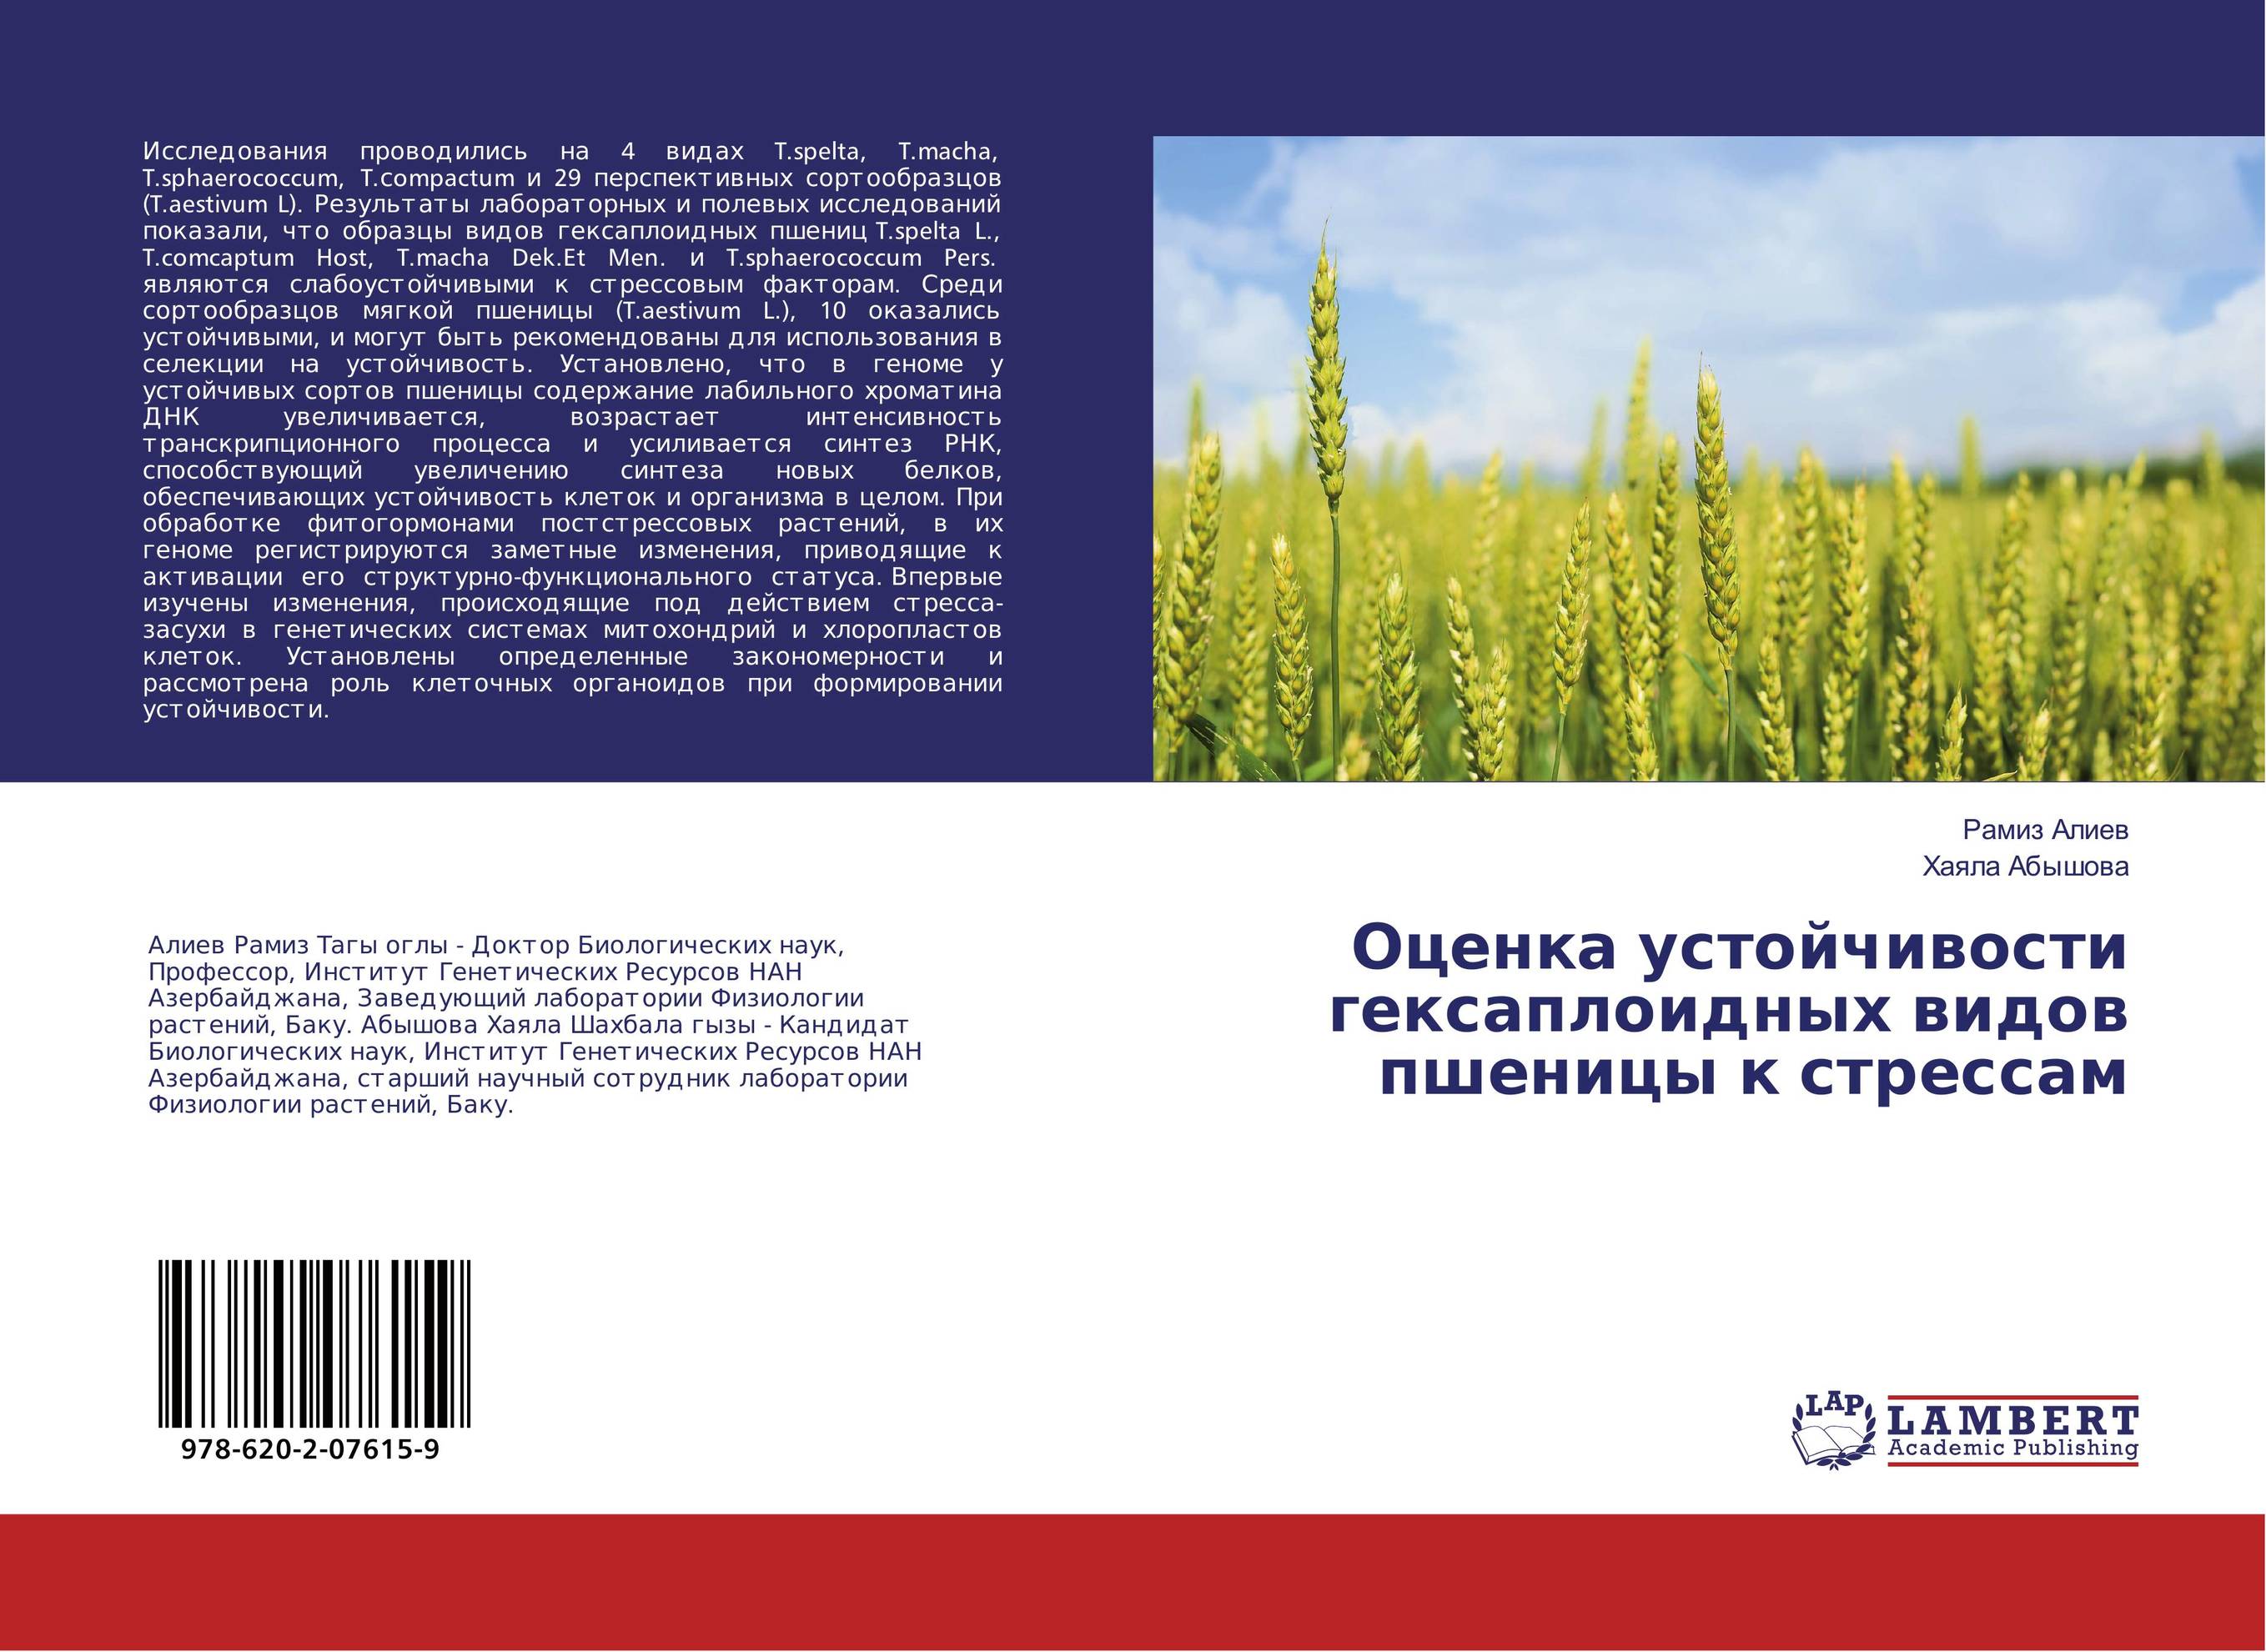 Оценка устойчивости гексаплоидных видов пшеницы к стрессам..